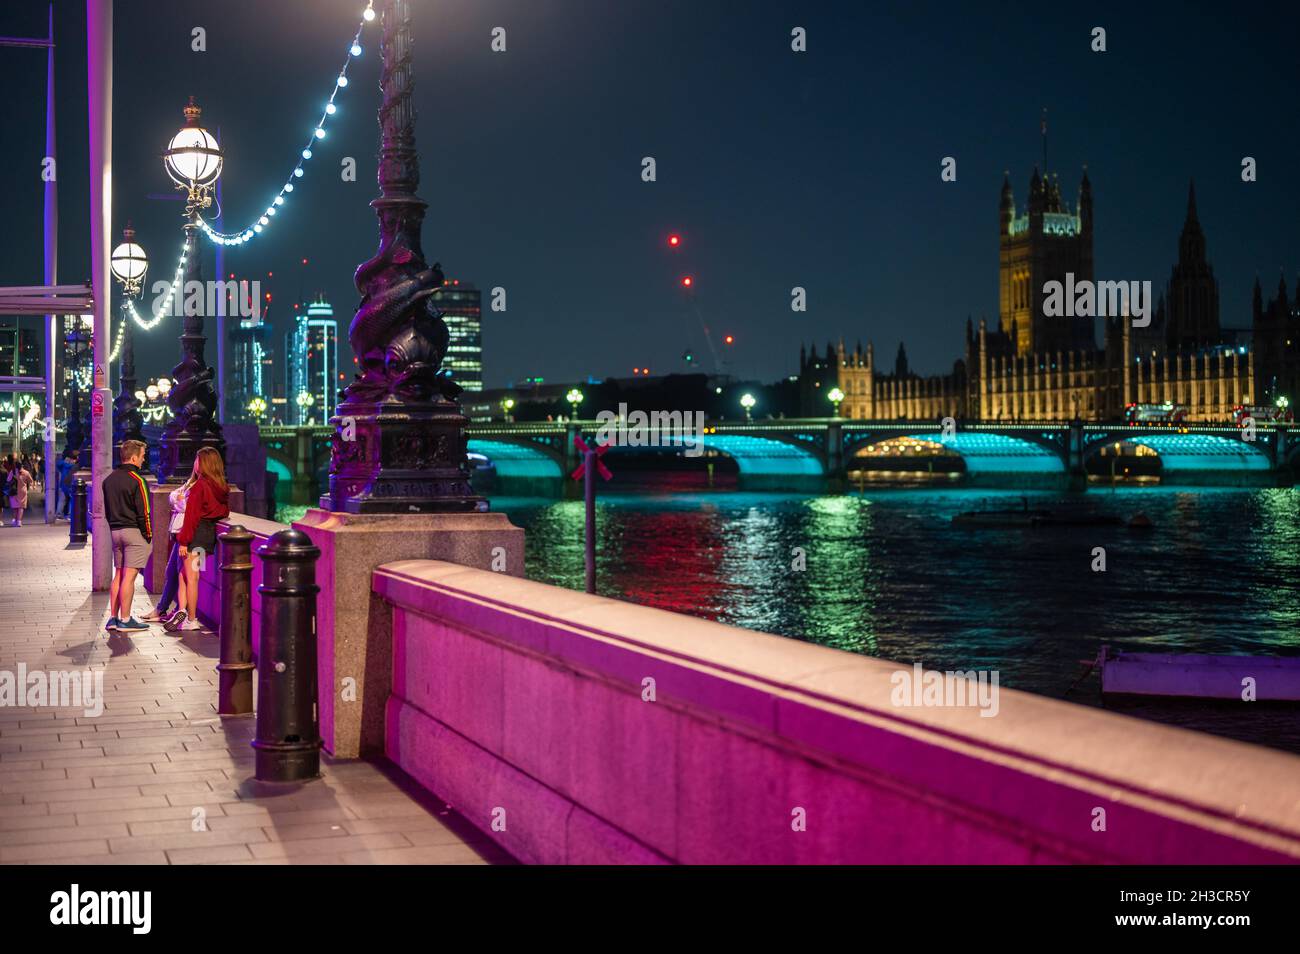 LONDON - 14. SEPTEMBER 2021: Farbenfroh beleuchtete Nachtszene auf dem Queen's Walk, Southbank vor der County Hall. Westminster Bridge und die Houses of Parl Stockfoto